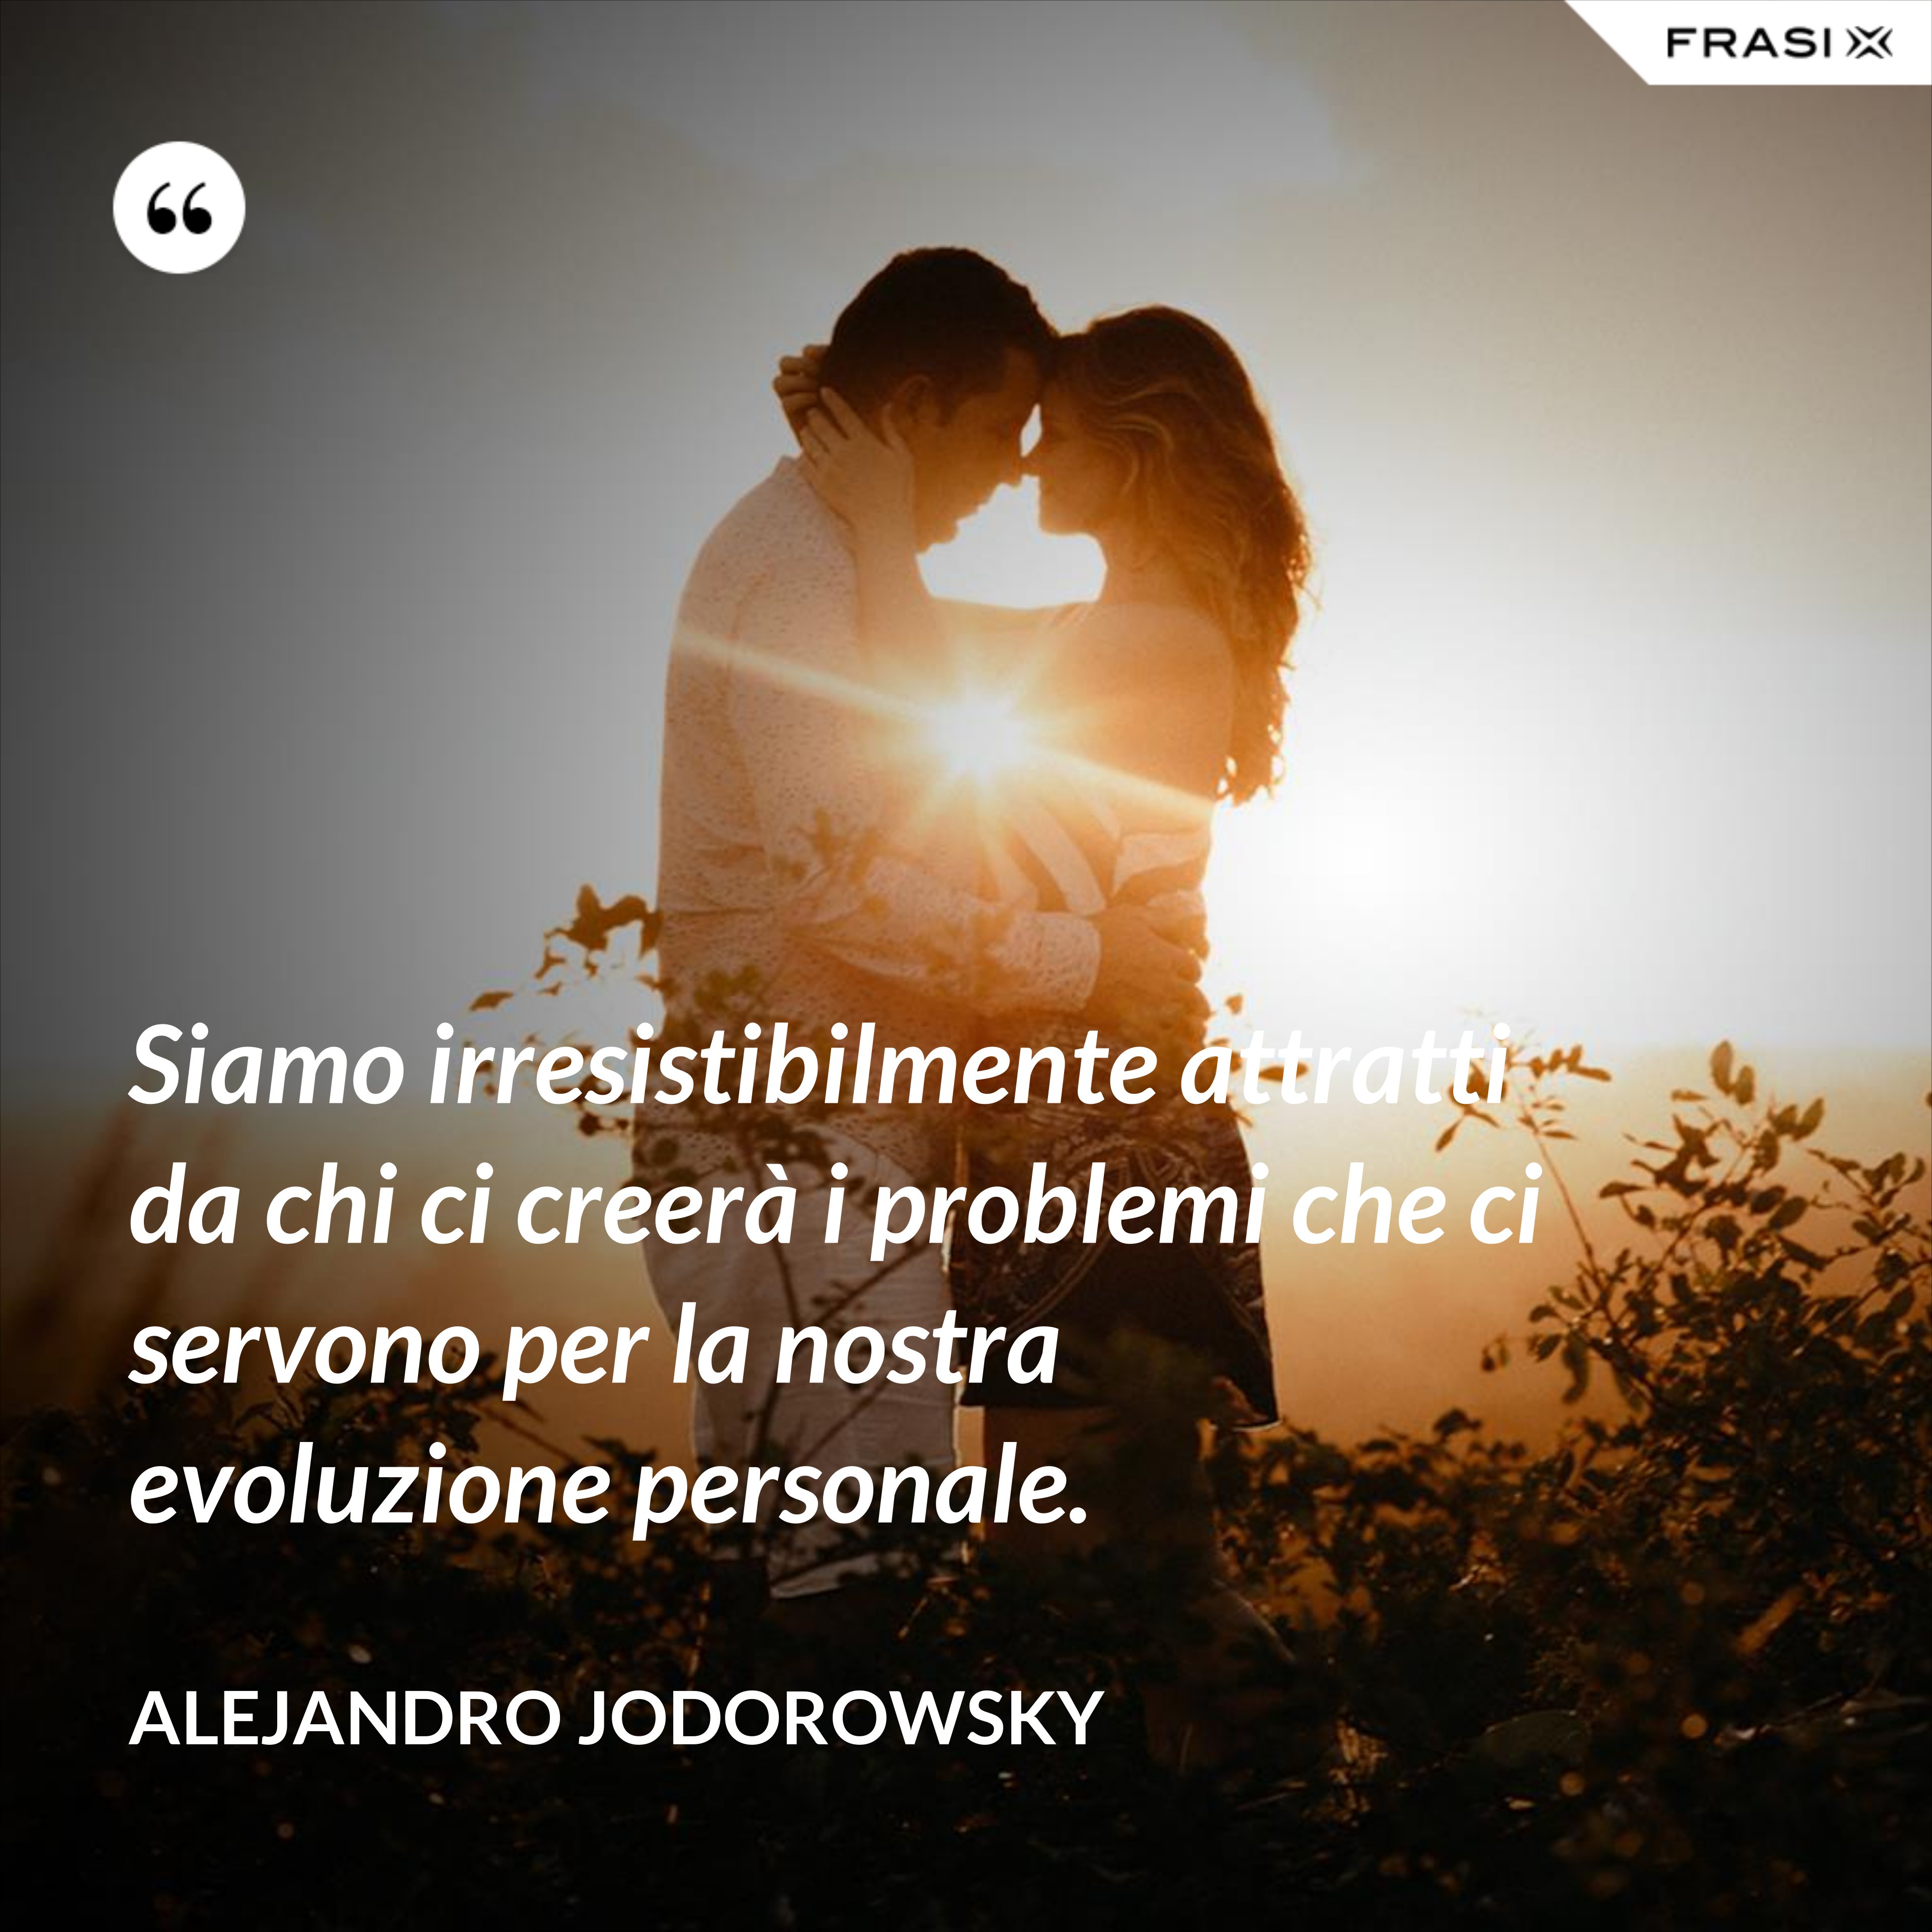 Siamo irresistibilmente attratti da chi ci creerà i problemi che ci servono per la nostra evoluzione personale. - Alejandro Jodorowsky